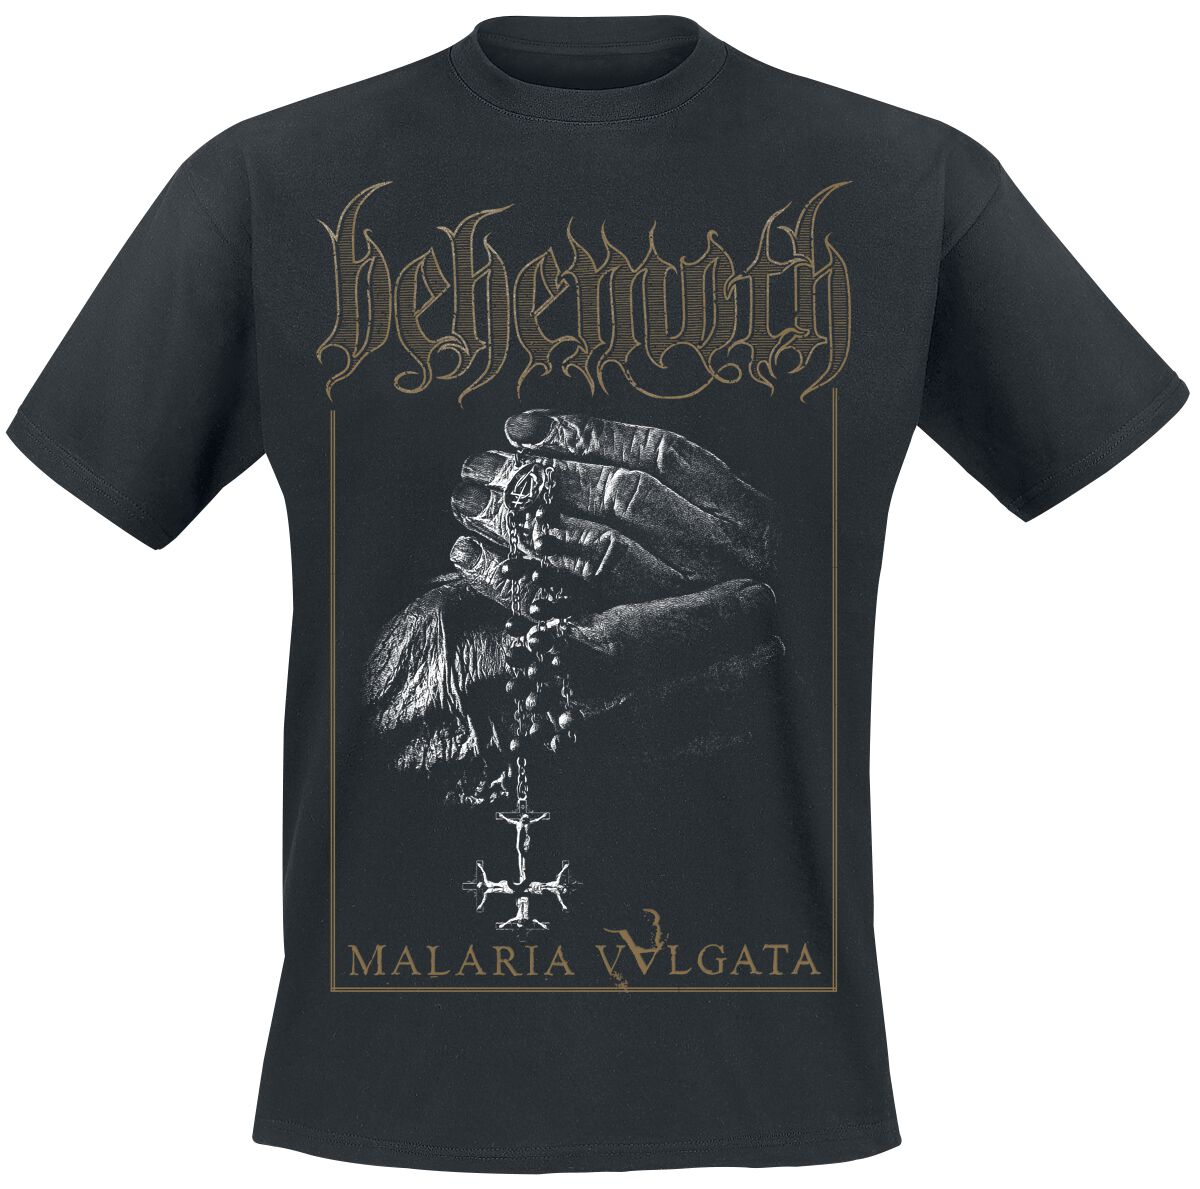 Behemoth T-Shirt - Malaria Vvlgata - S bis XXL - für Männer - Größe XL - schwarz  - Lizenziertes Merchandise!